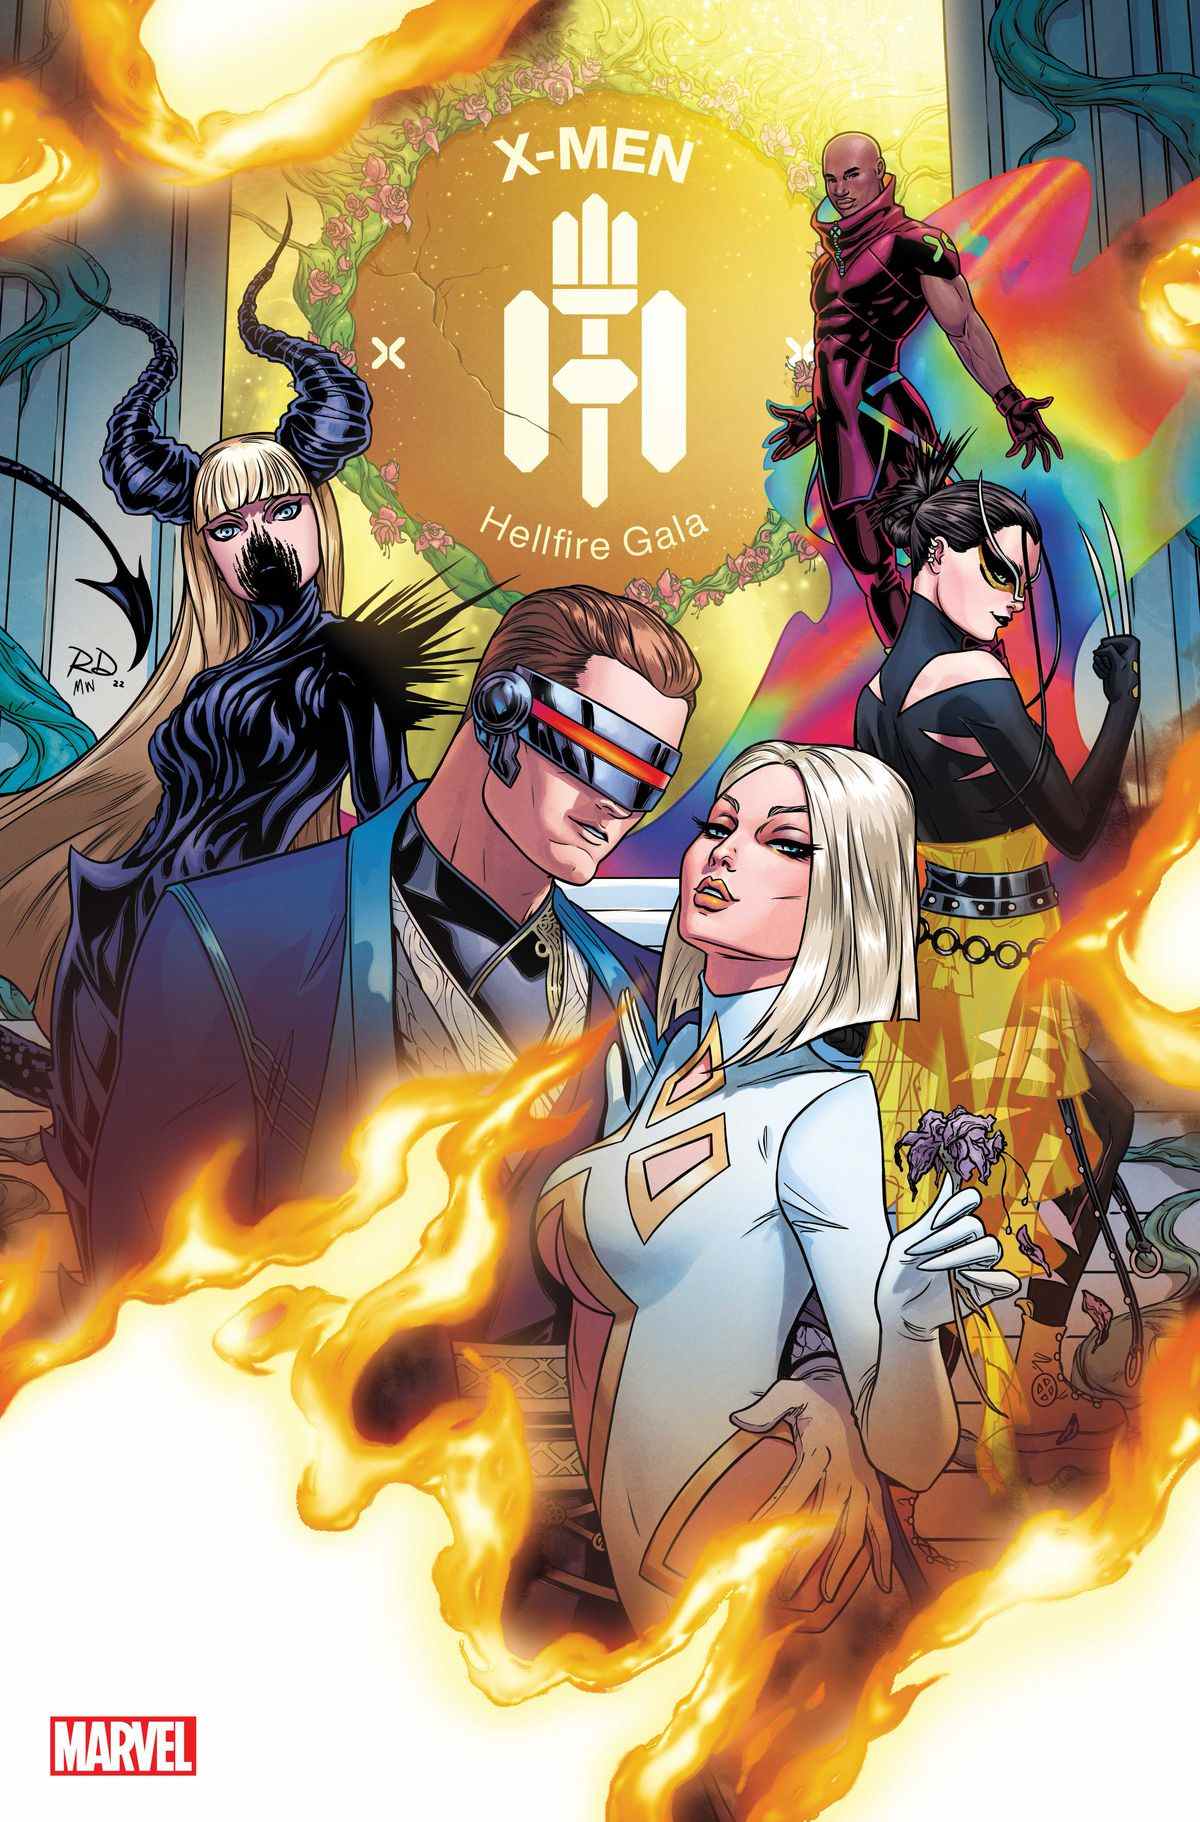 Cyclope et Emma Frost posent à la mode sur la couverture du X-Men : Hellfire Gala #1 (2022).  Derrière eux, Wolverine (Laura Kinney), Magik et Synch posent également. 